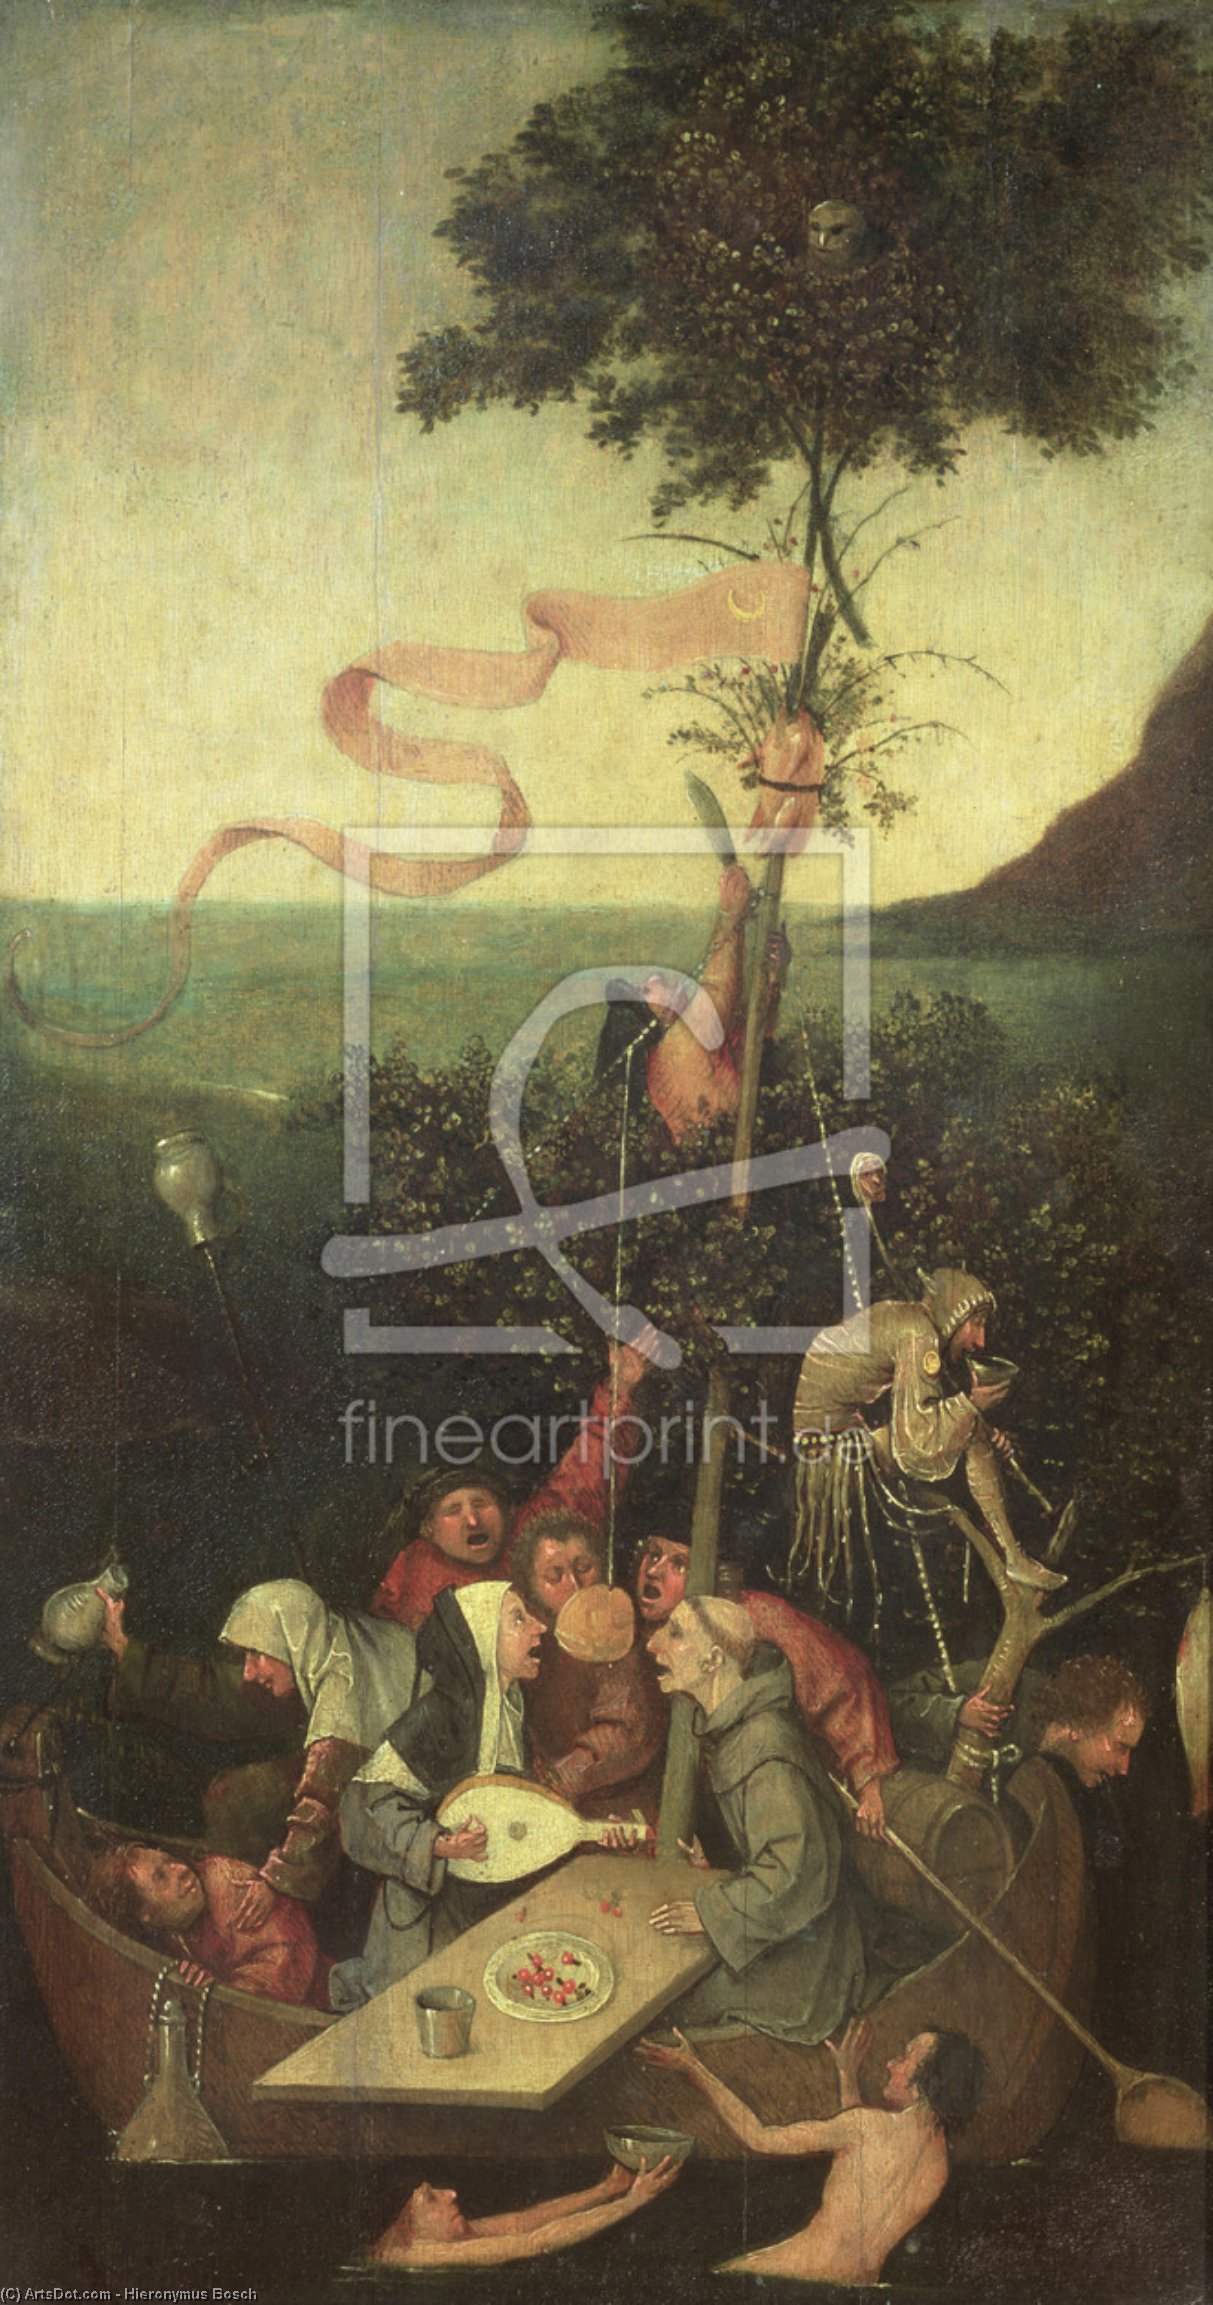 Comprar Reproducciones De Arte Del Museo La nave de los tontos, 1500 de Hieronymus Bosch (1450-1516, Netherlands) | ArtsDot.com